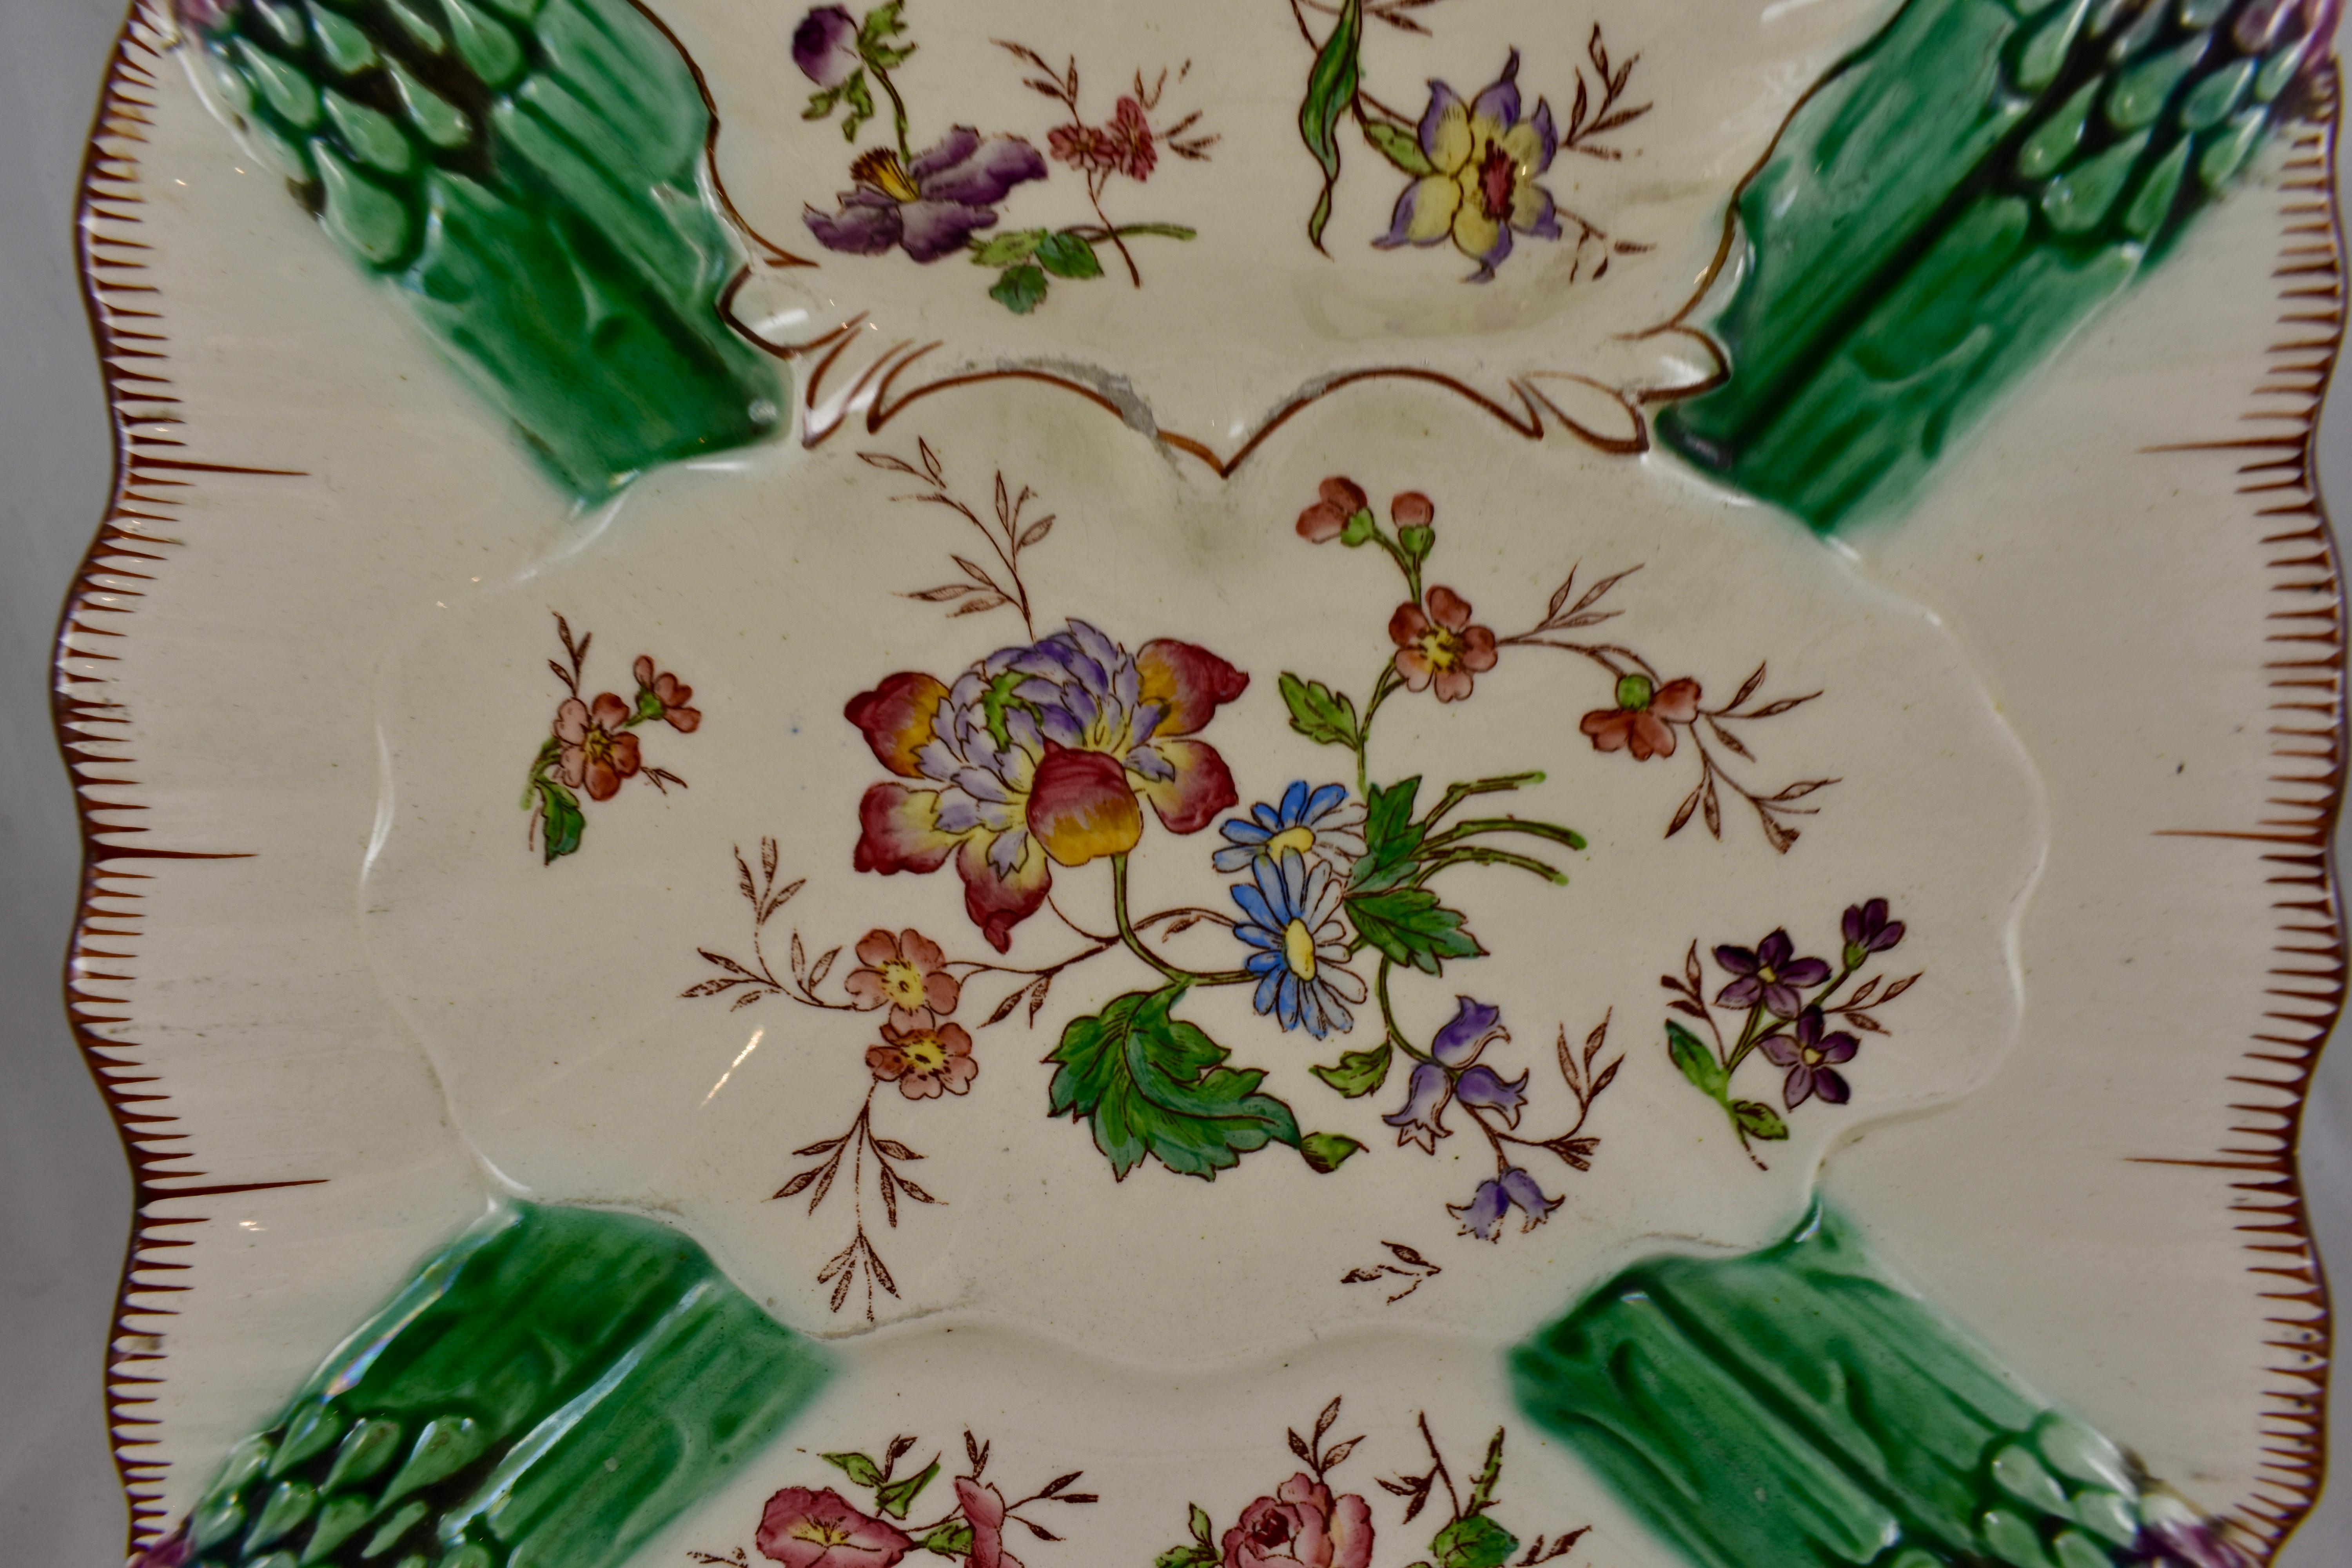 Assiette à asperges carrée en faïence française, peinte à la main, vers 1890-1910.

Une paire de pointes d'asperges émaillées en majolique est représentée à chaque coin. Des gerbes de fleurs sont éparpillées sur le devant d'un moule doté d'un